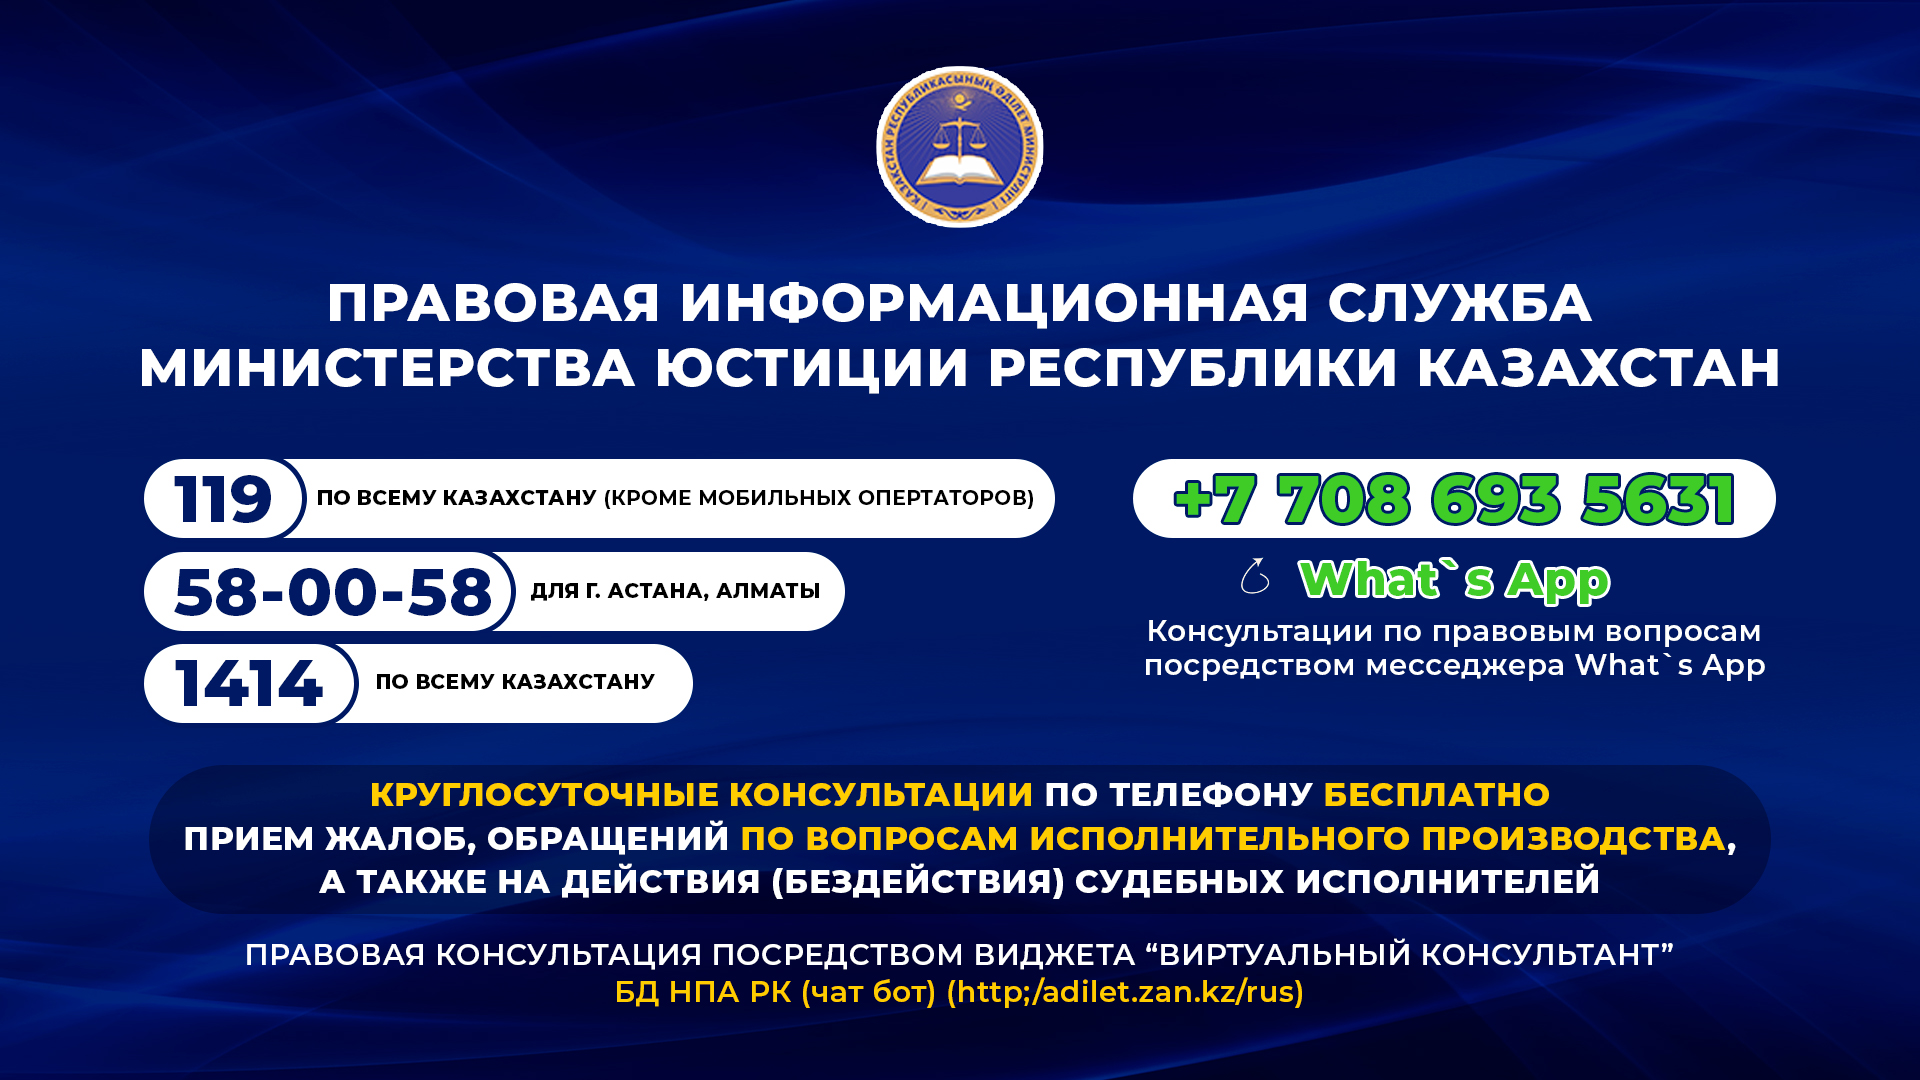 Правовая информационная служба Министерства Юстиции Республики Казахстан.